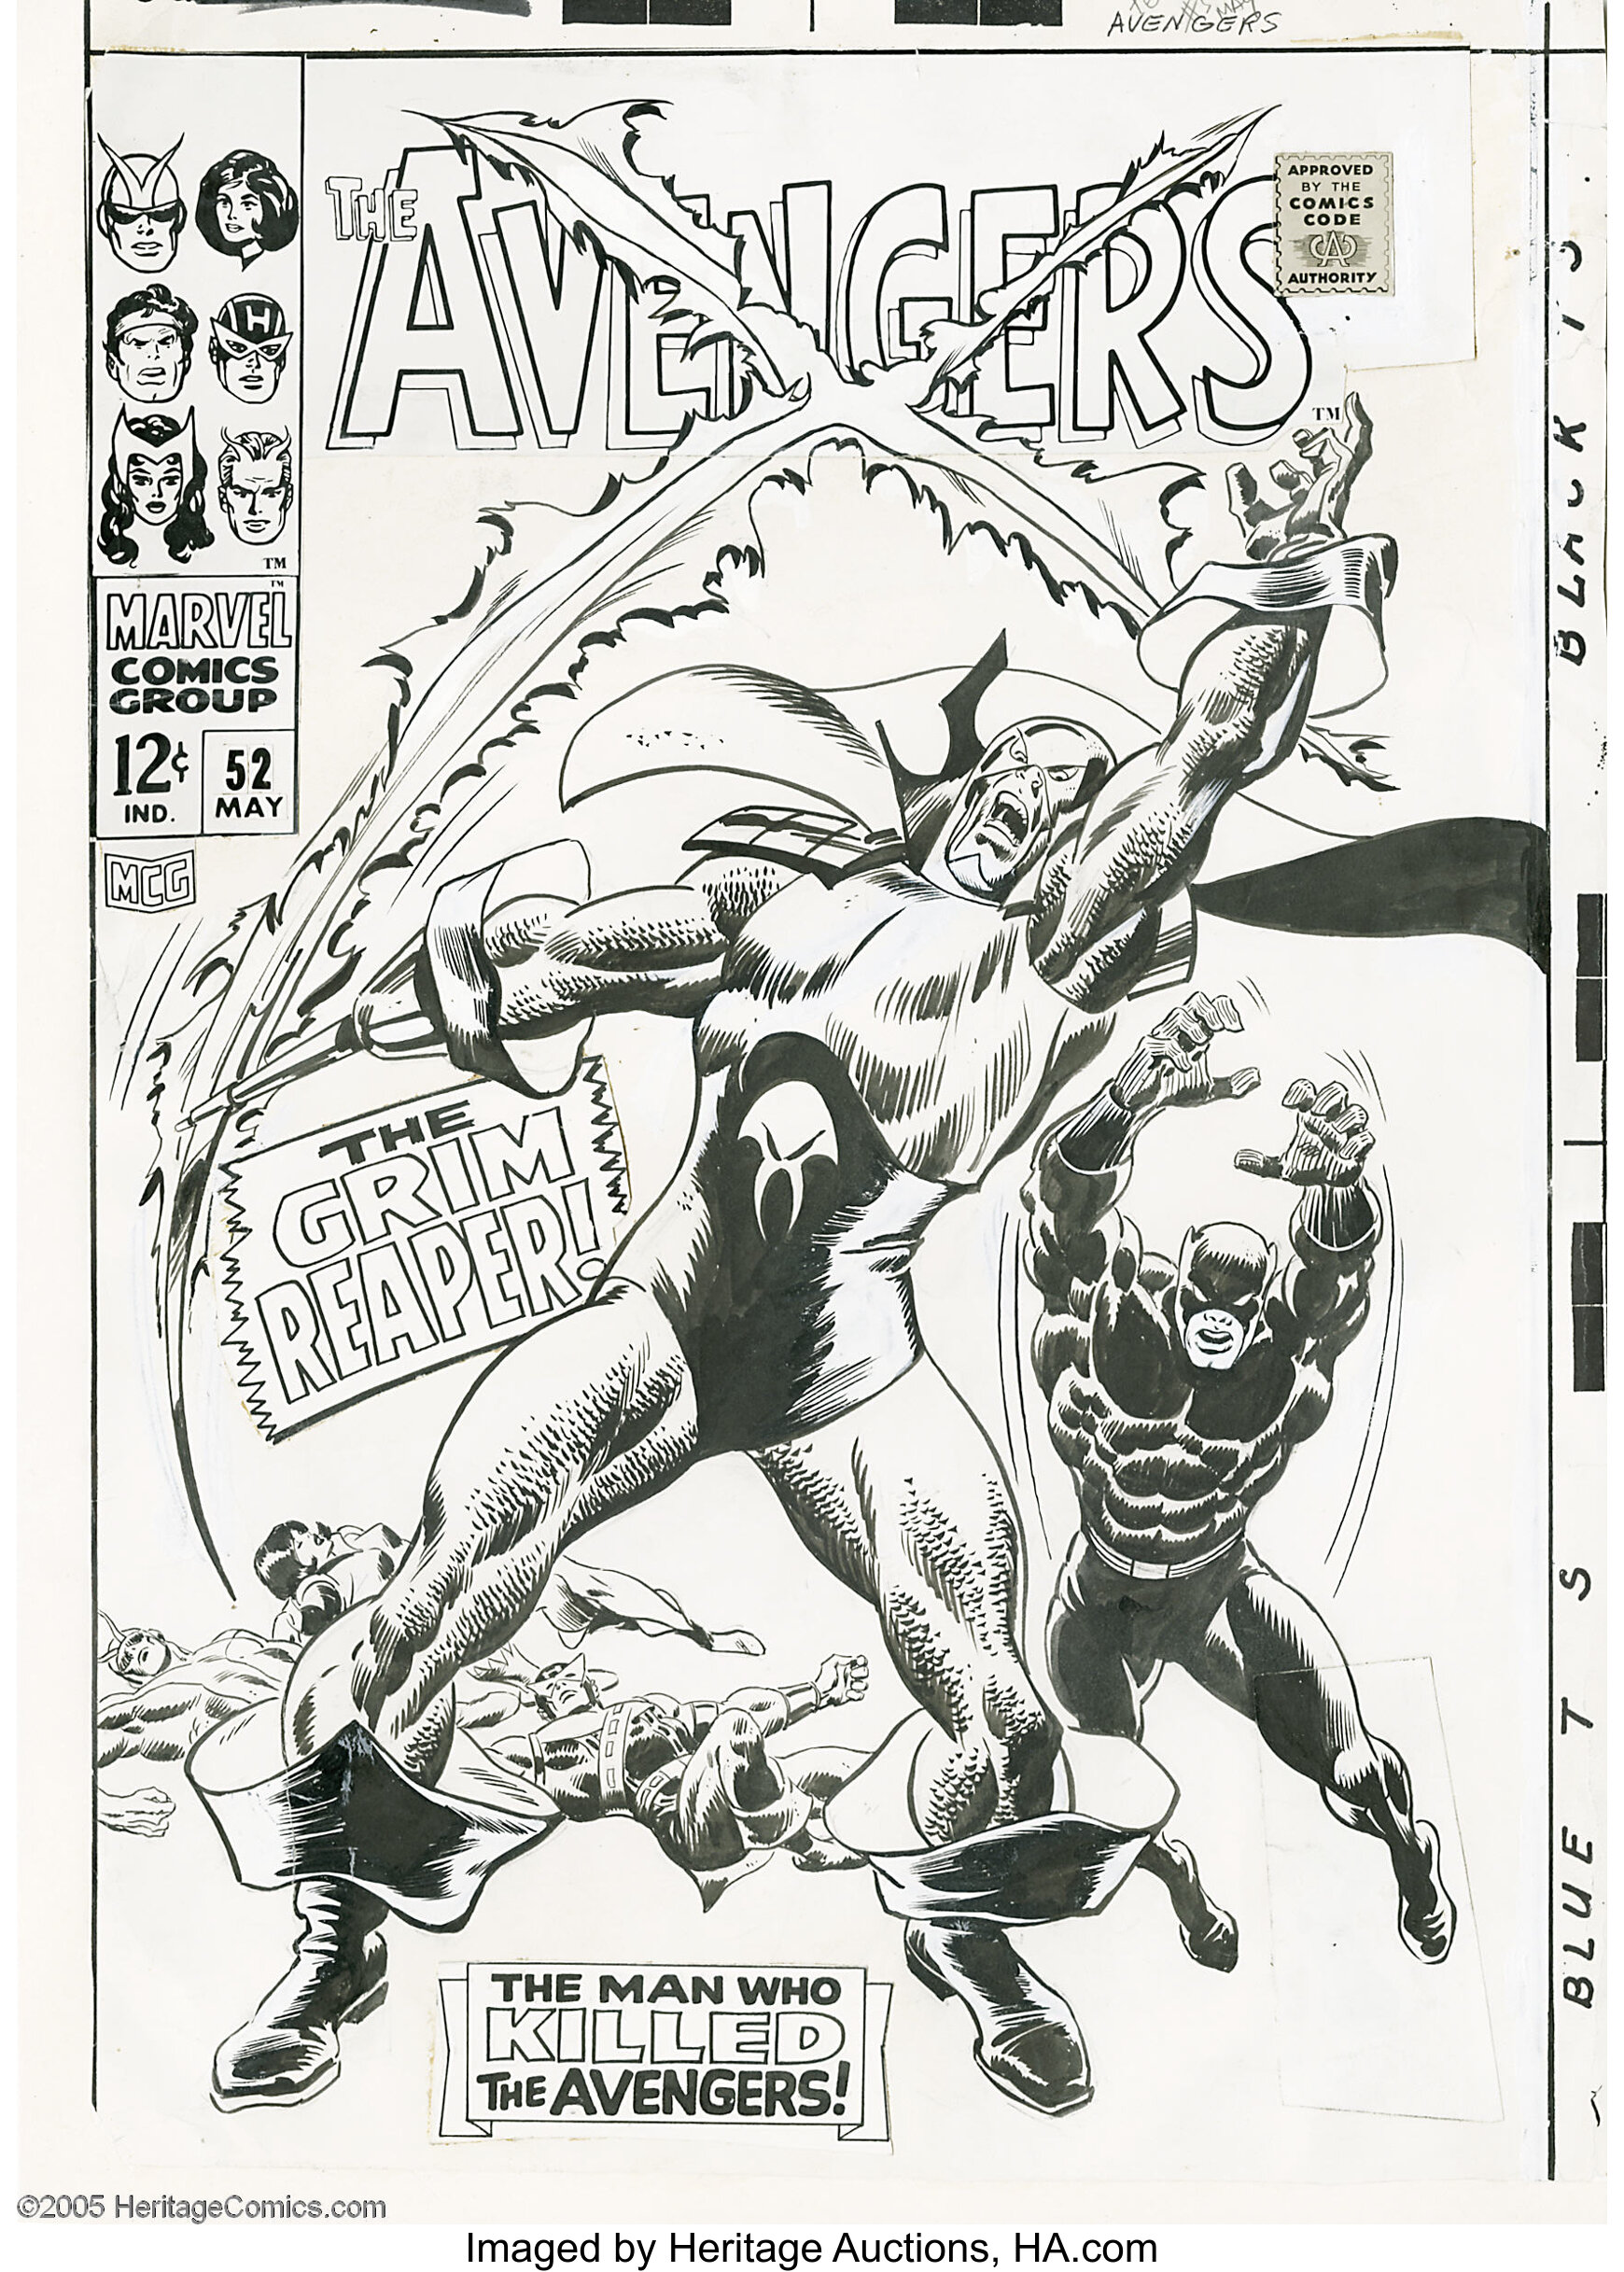 John Buscema - Avengers #52 Cover Original Art (Marvel, 1968). The